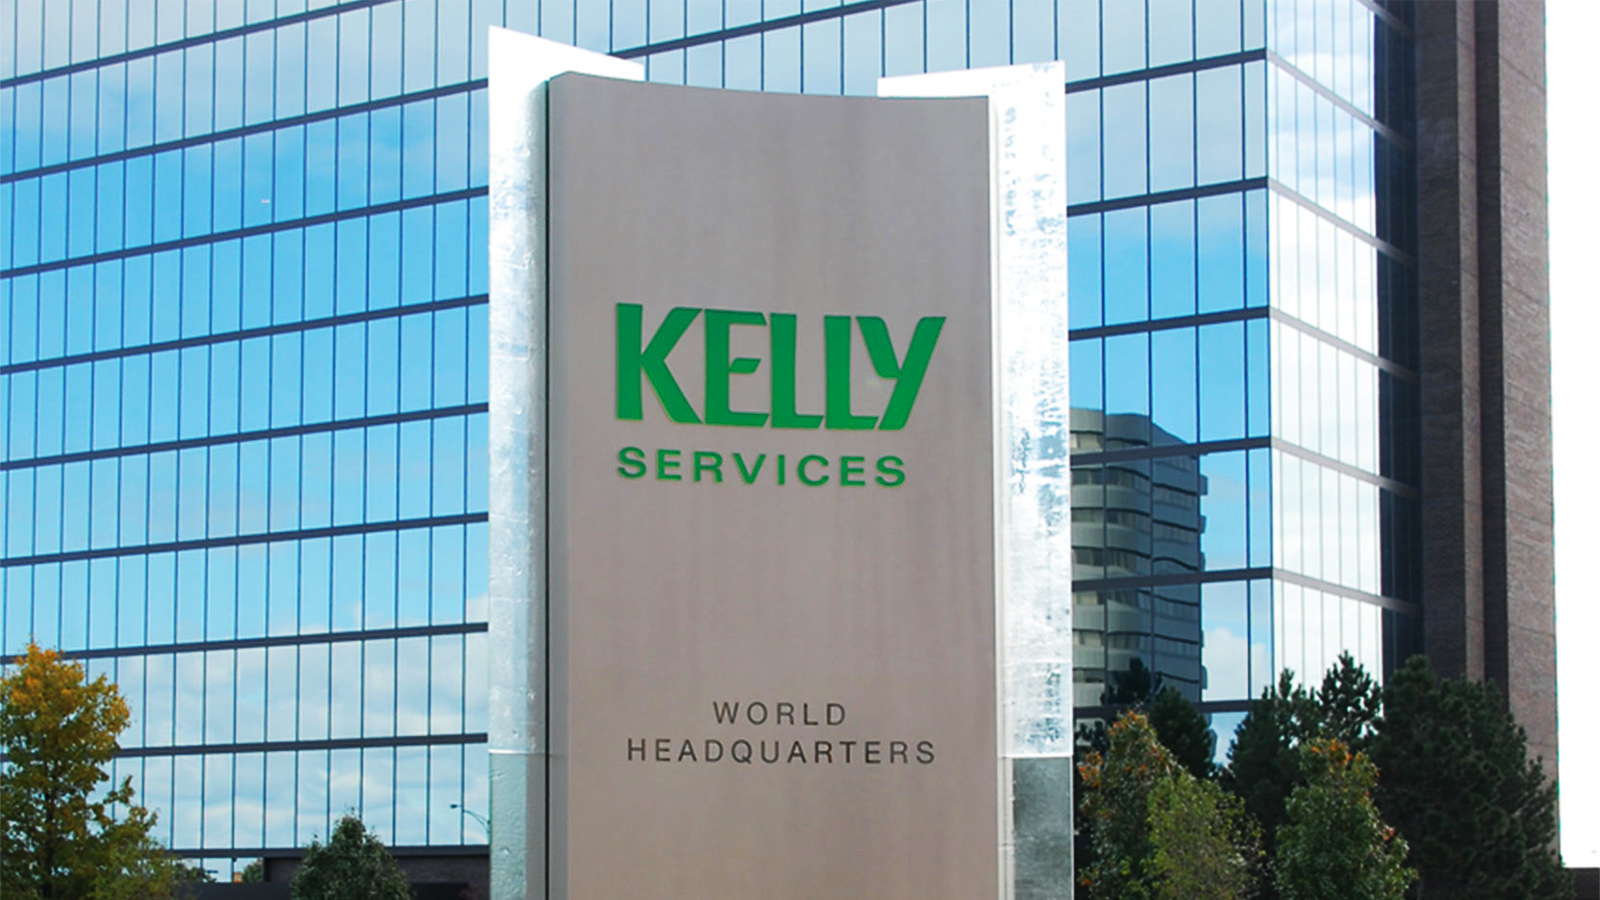 Крупное кадровое агентство Kelly Services продает бизнес в России и уходит из страны